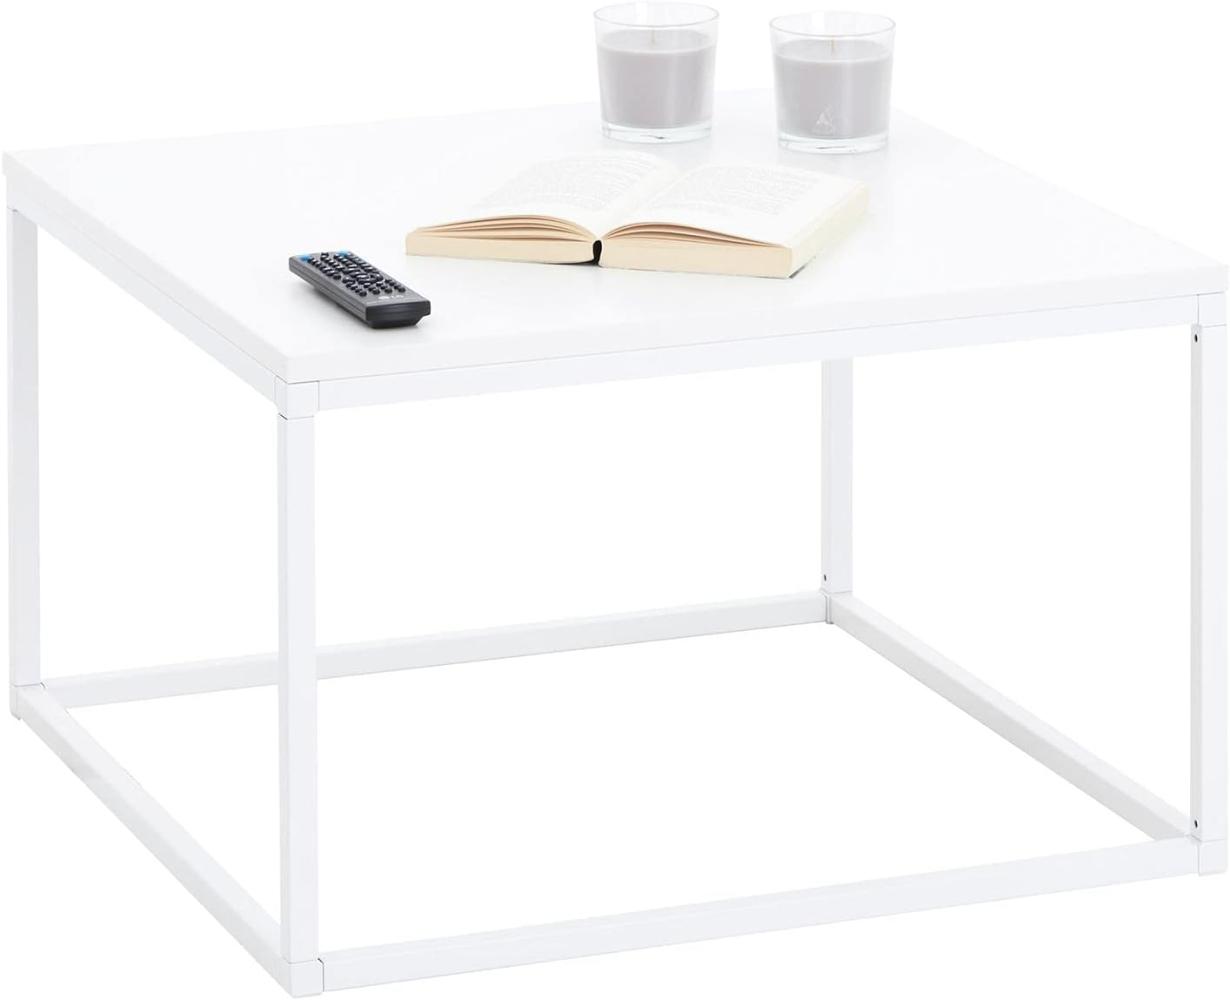 CARO-Möbel Couchtisch Novy Wohnzimmertisch mit elegantem Metallgestell, Beistelltisch in weiß/weiß, 67 x 67 cm Bild 1